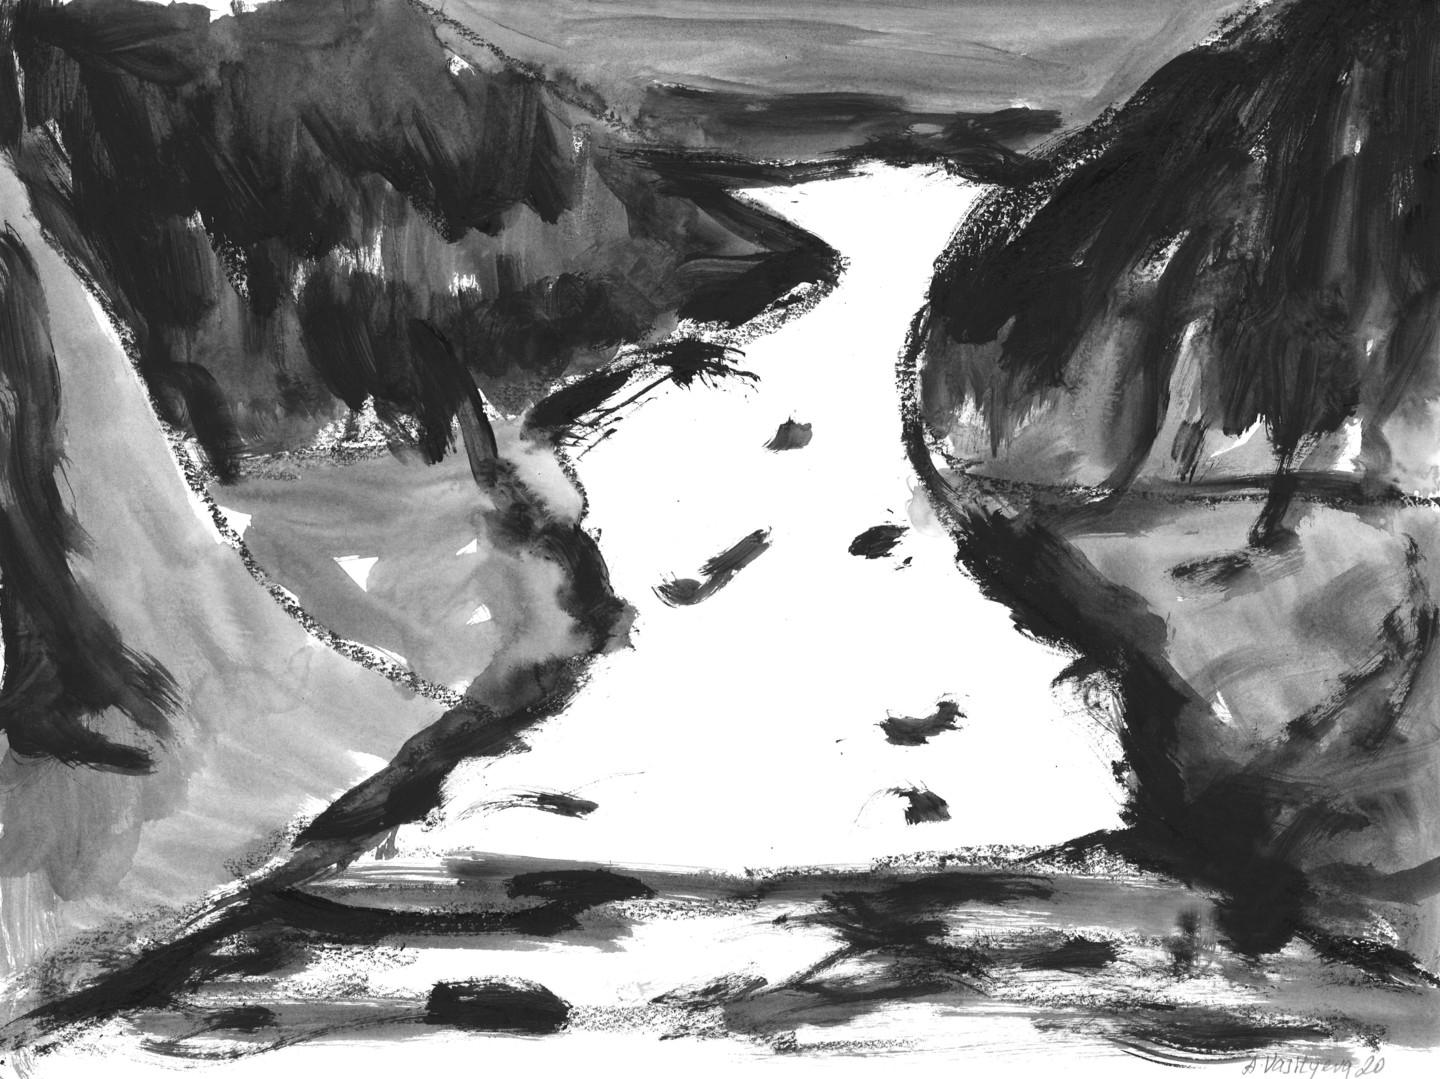 Anastasia Vasilyeva - Berge 002 (2020)

Abstrakte Landschaft, Malerei in schwarzen, grauen und weißen Farben. Das Kunstwerk stellt die Alpen im Winter dar, mit Schnee bedeckt und Nebel über ihm. Das Gemälde wurde mit gemischten Medien, Acryl und